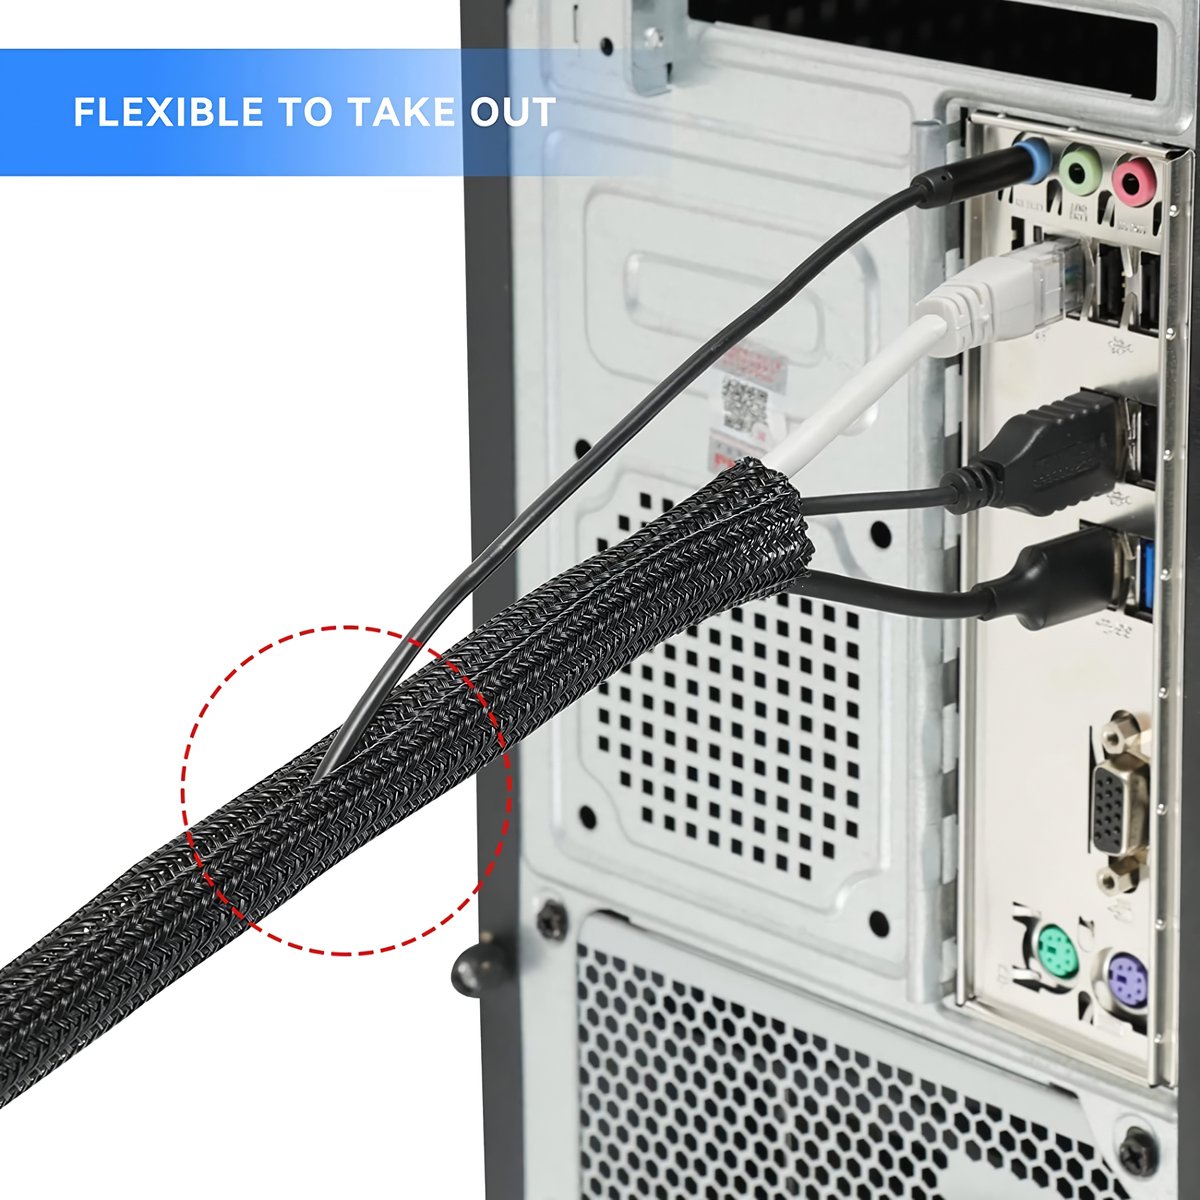 3 m Kabelslang, 25-35 mm, zelfsluitend kabelkanaal, flexibel geweven kabelmantel, kabelmanagement voor bureau, TV, computer, pc, kabelbescherming voor hond, kat, zwart